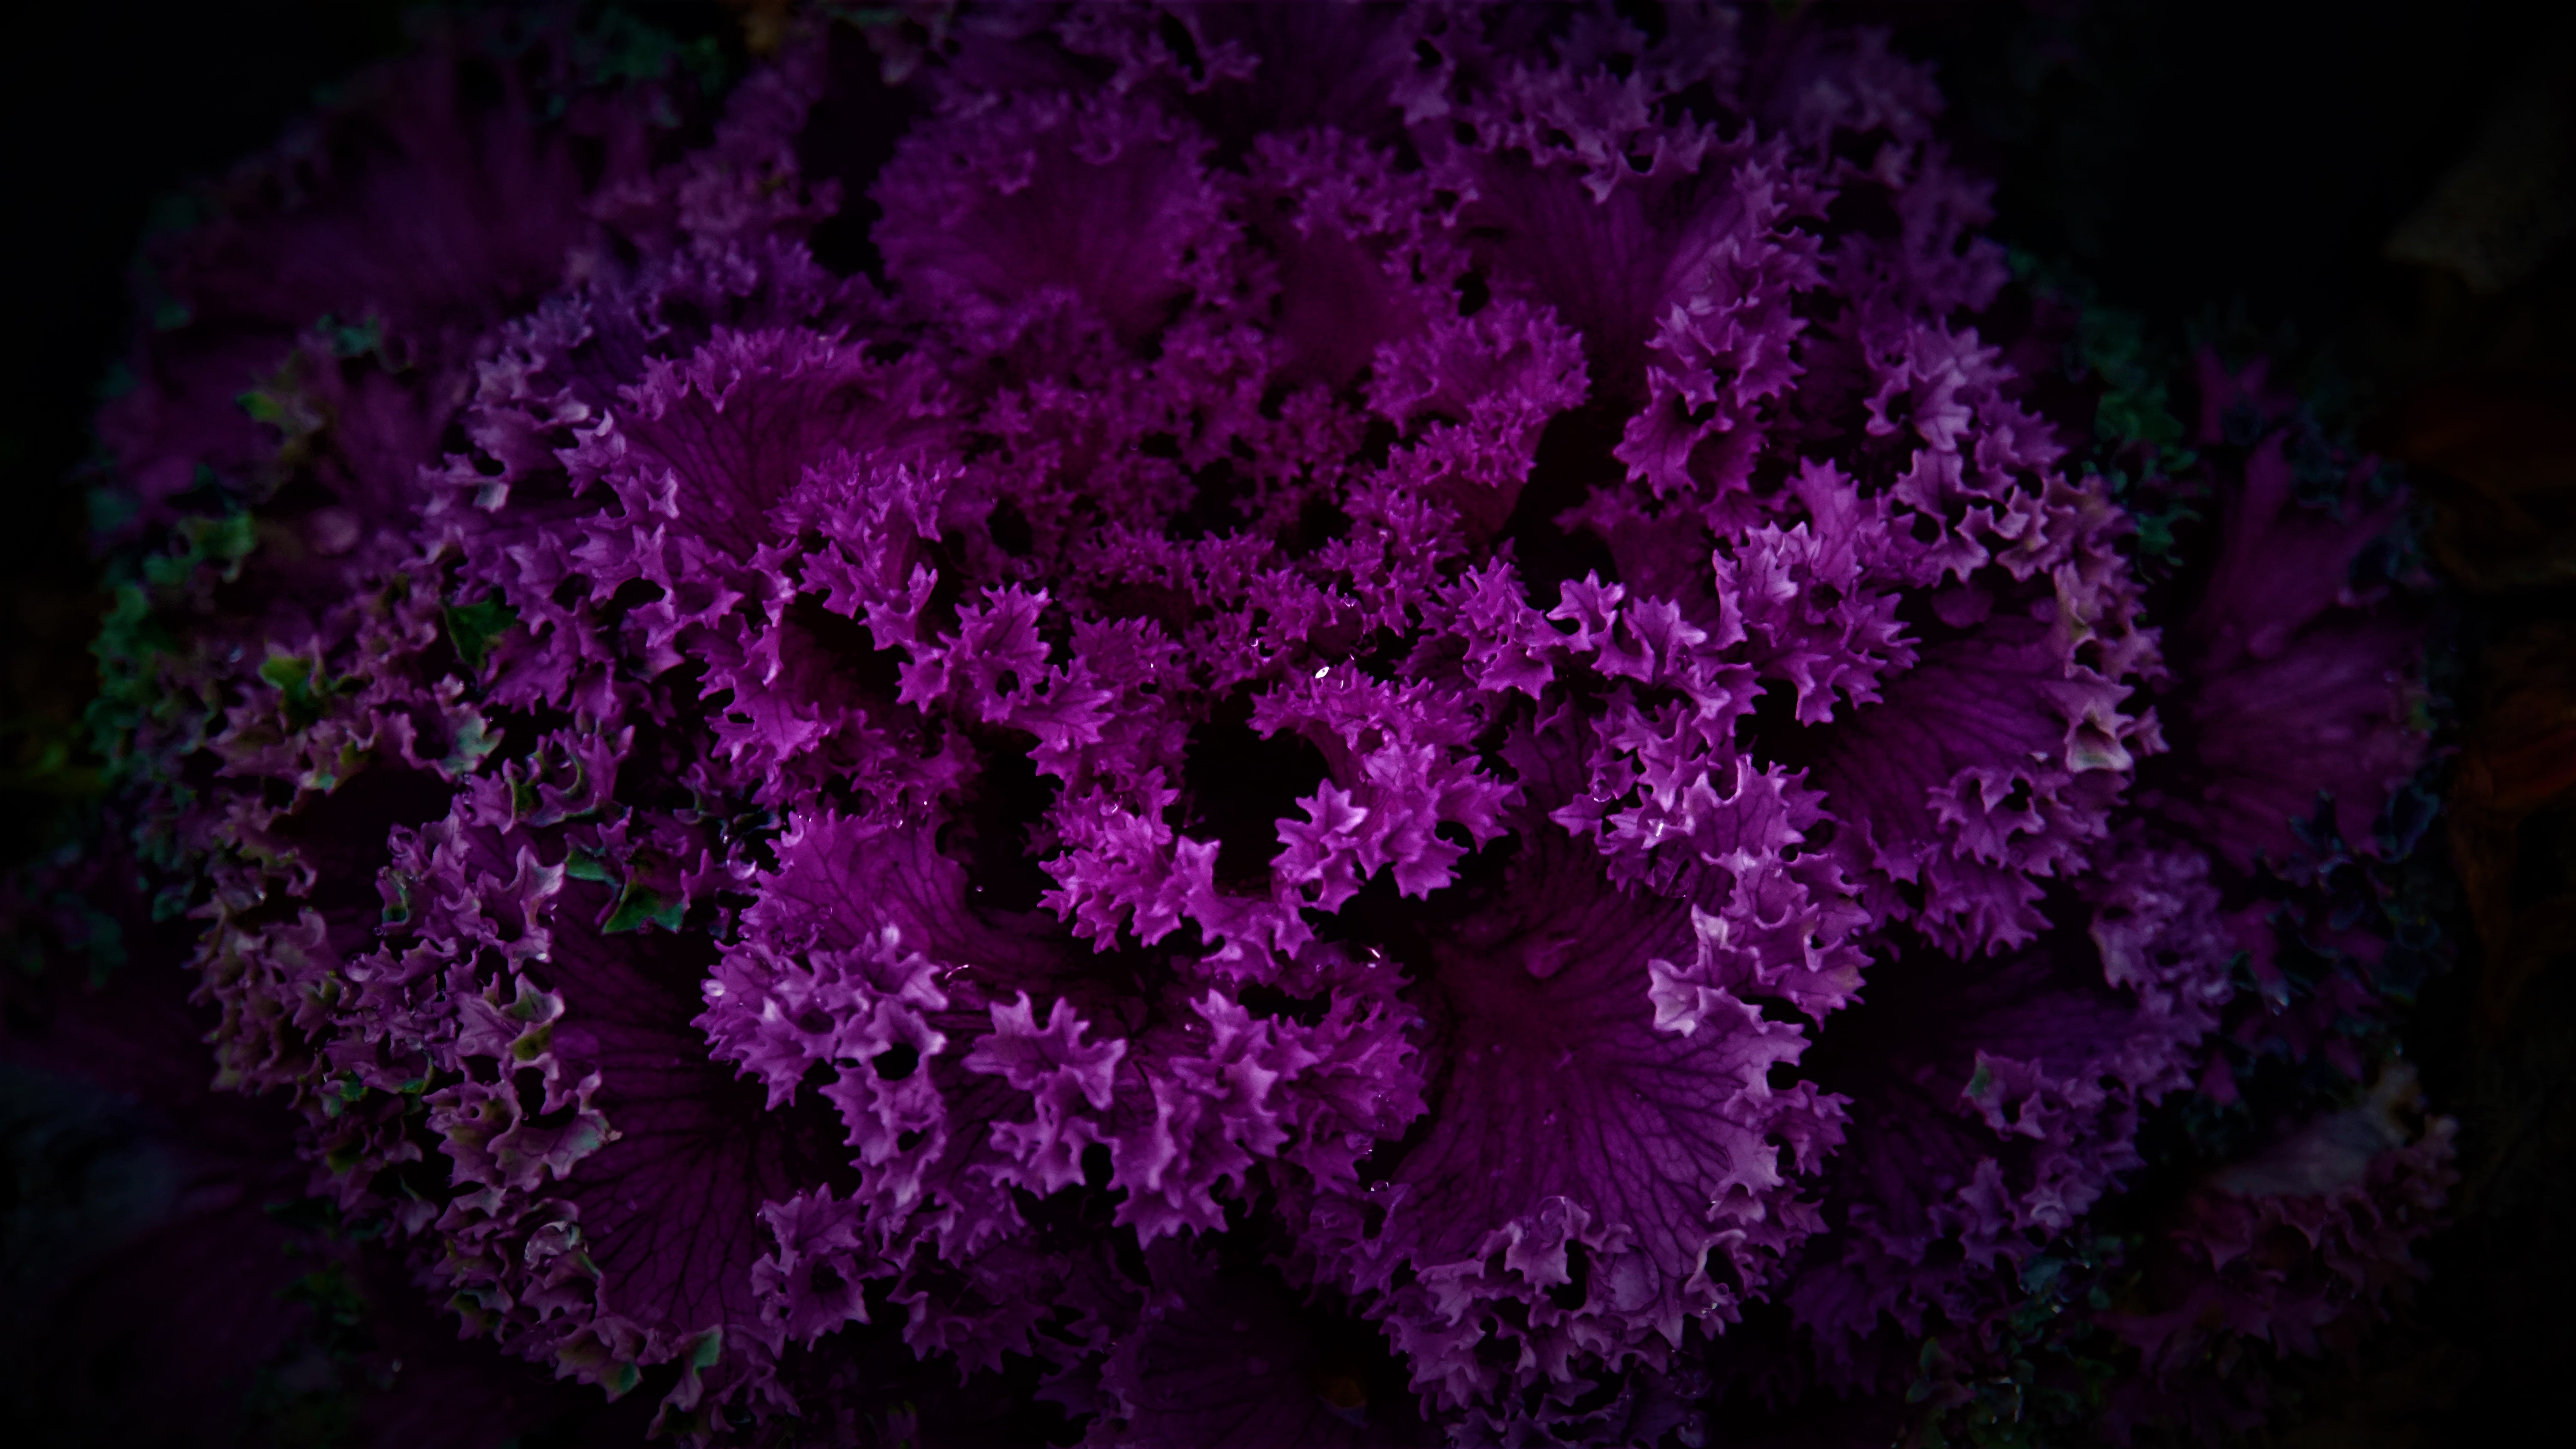 HD wallpaper, 5K, Pattern, Dark Background, Purple Plant, Beautiful, Purple Flowers, Floral